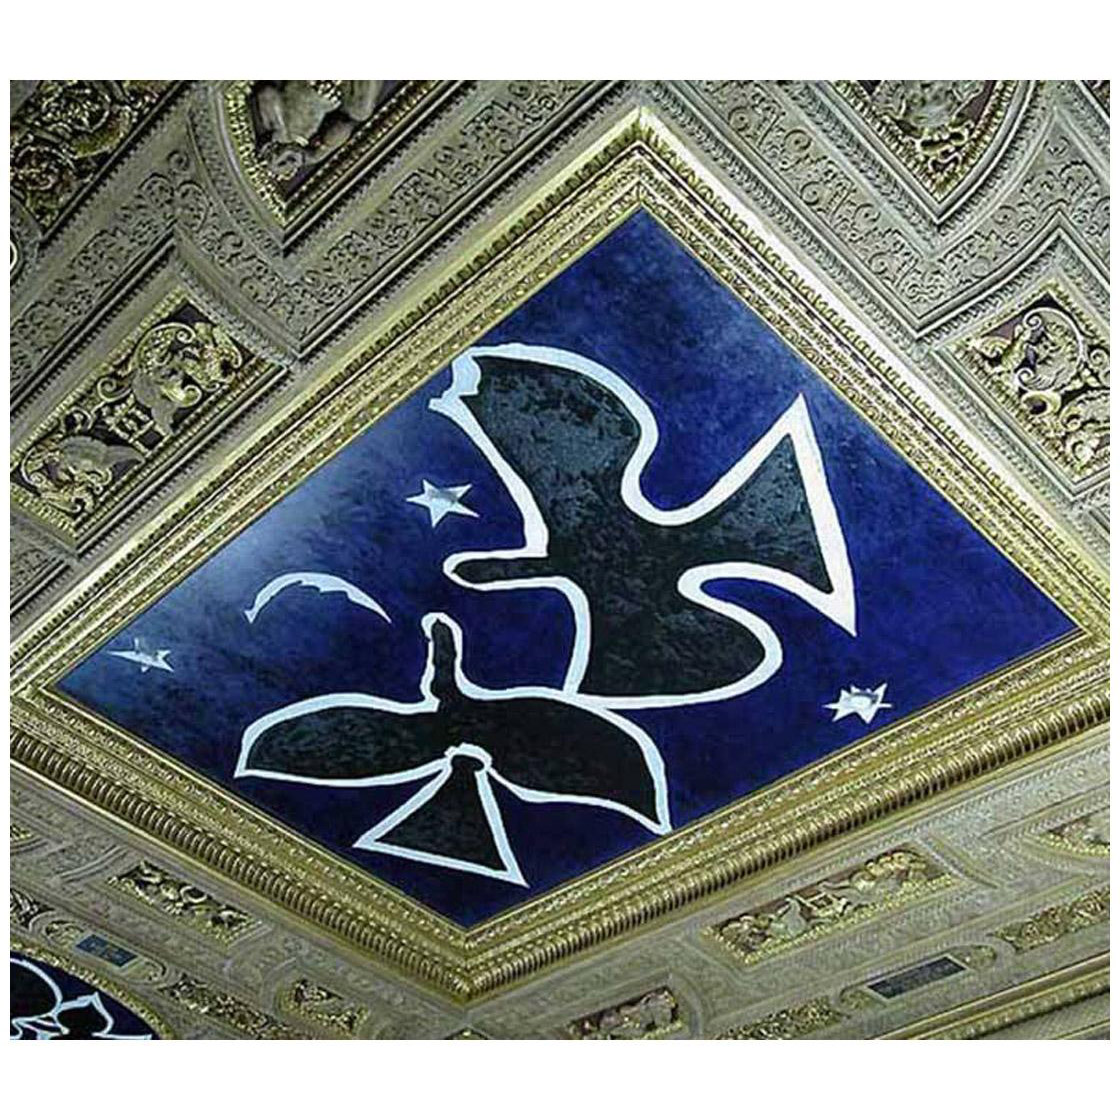 Georges Braque. Les oiseau. 1953. Plafond de la salle étrusque du Louvre 